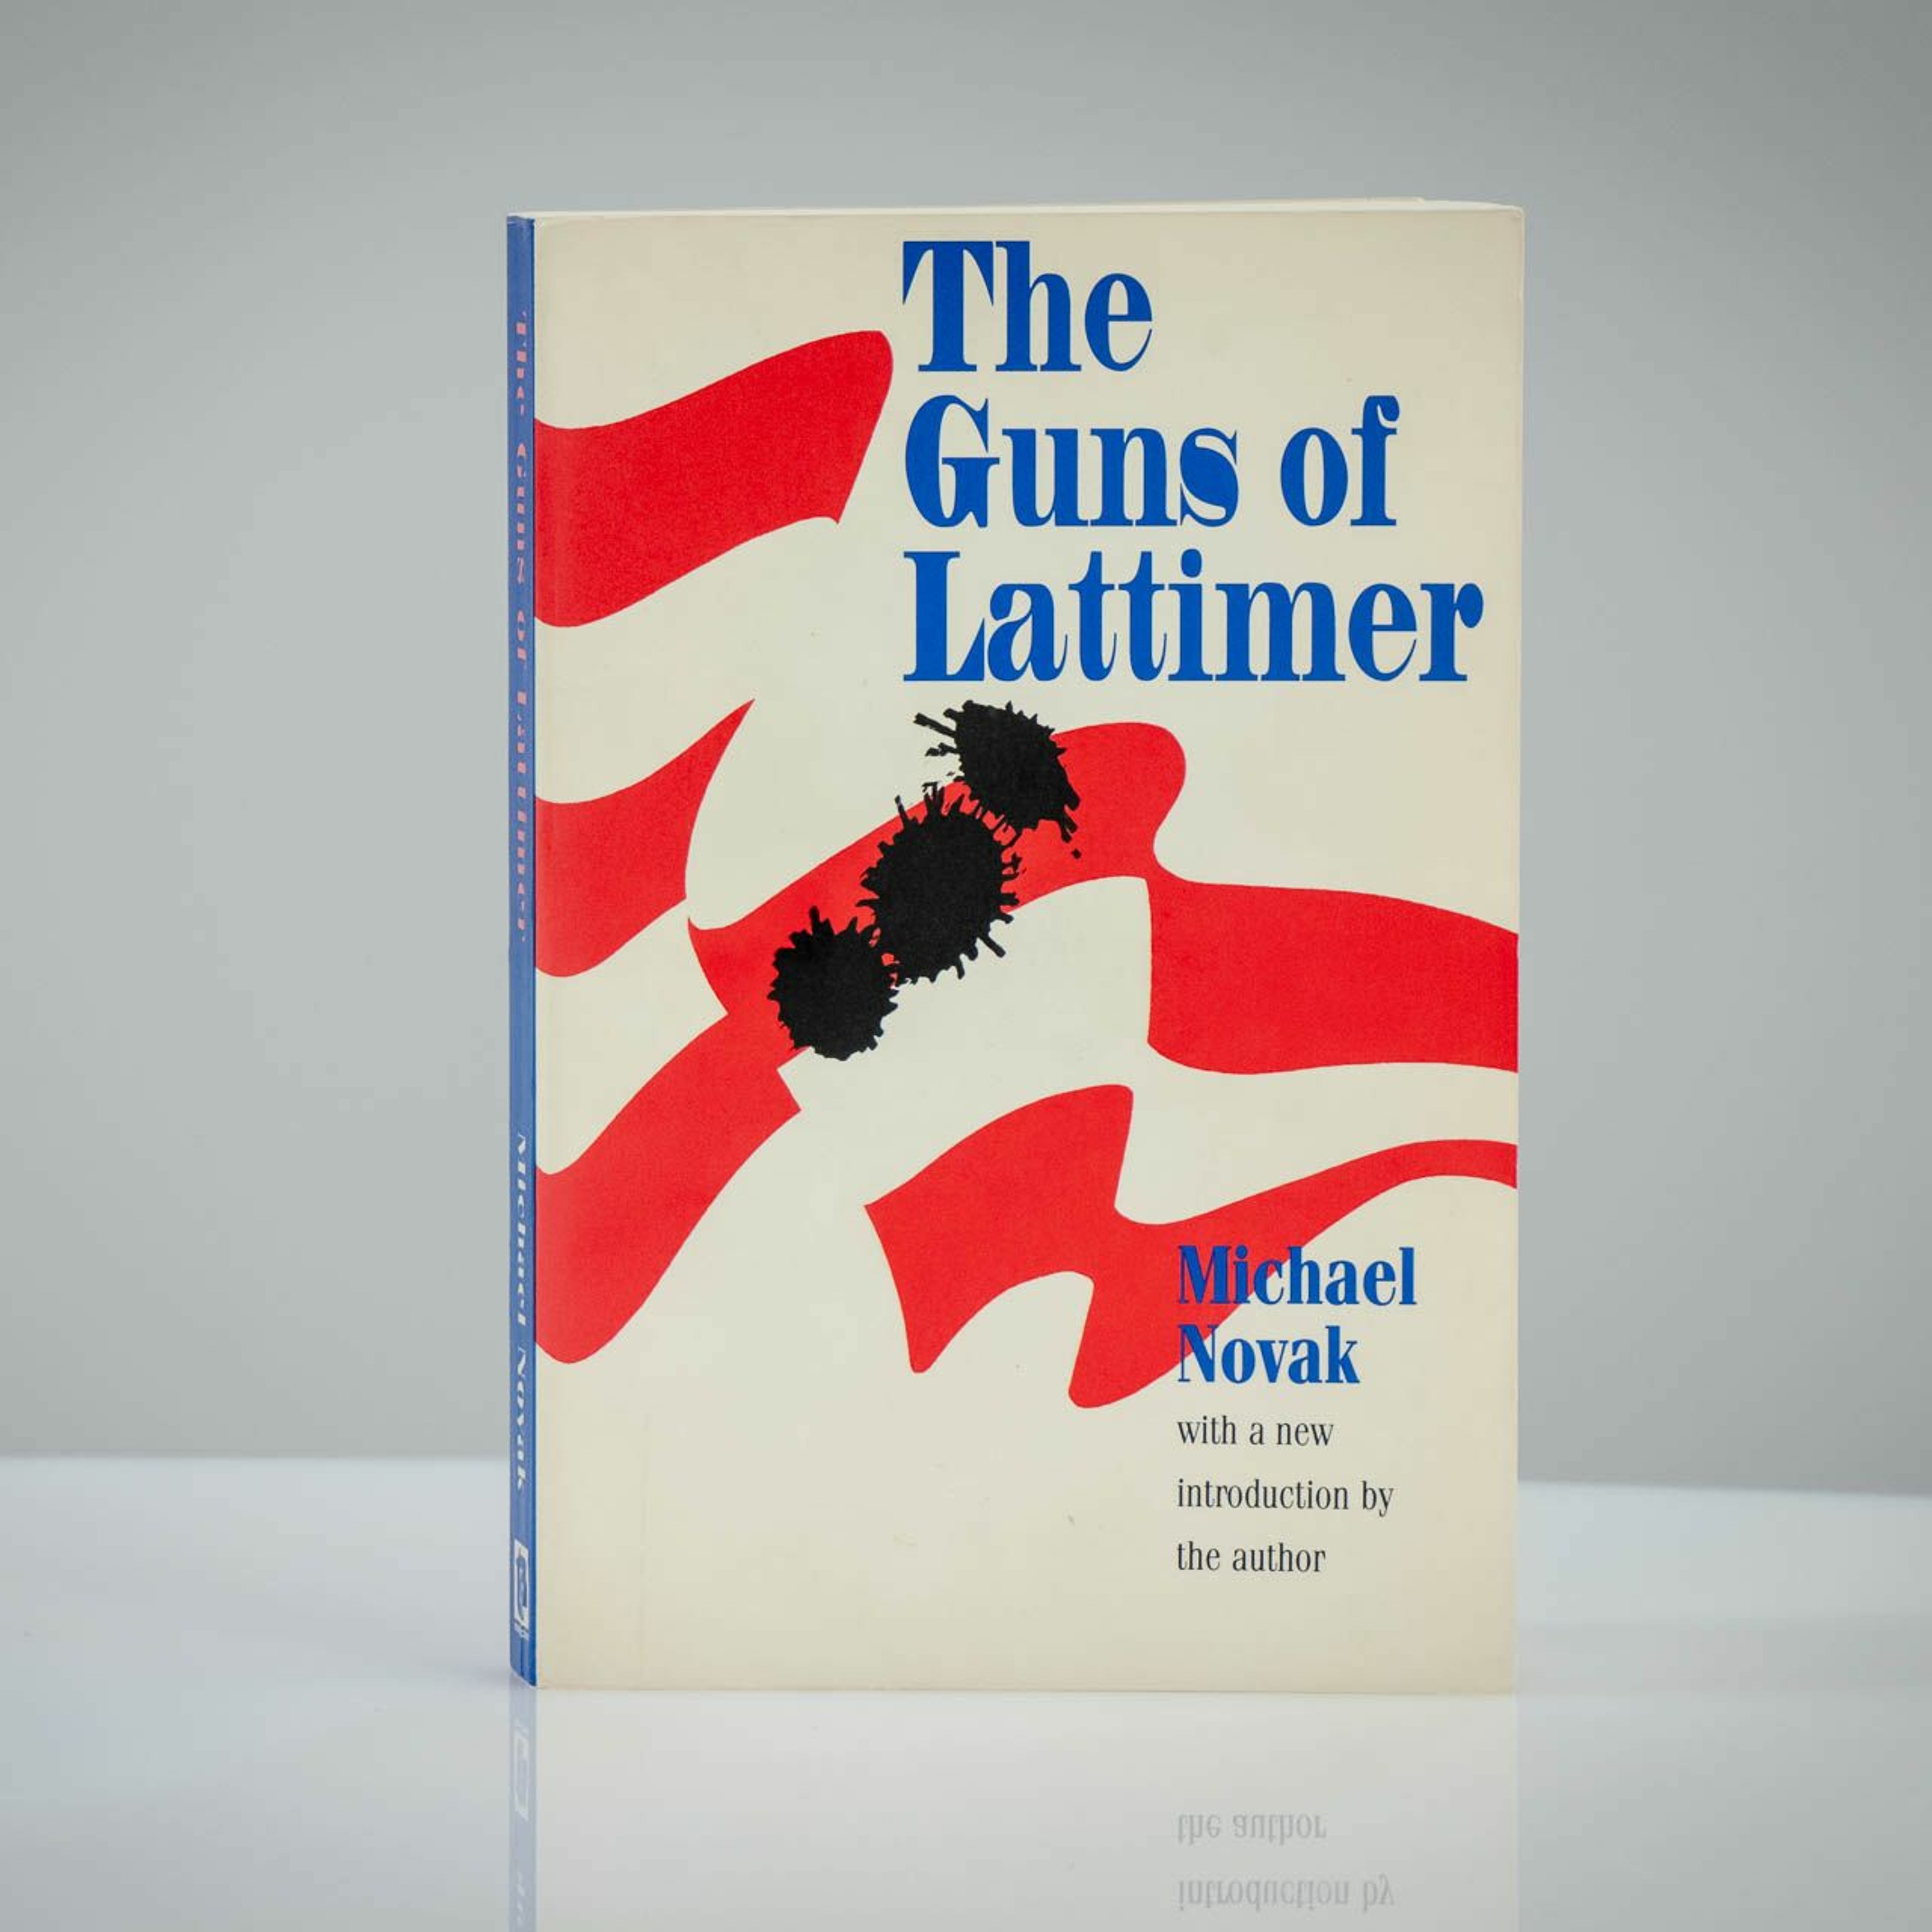 Lattimerský masaker / Ako v Amerike strieľali do Slovákov, no tí im aj tak ukázali